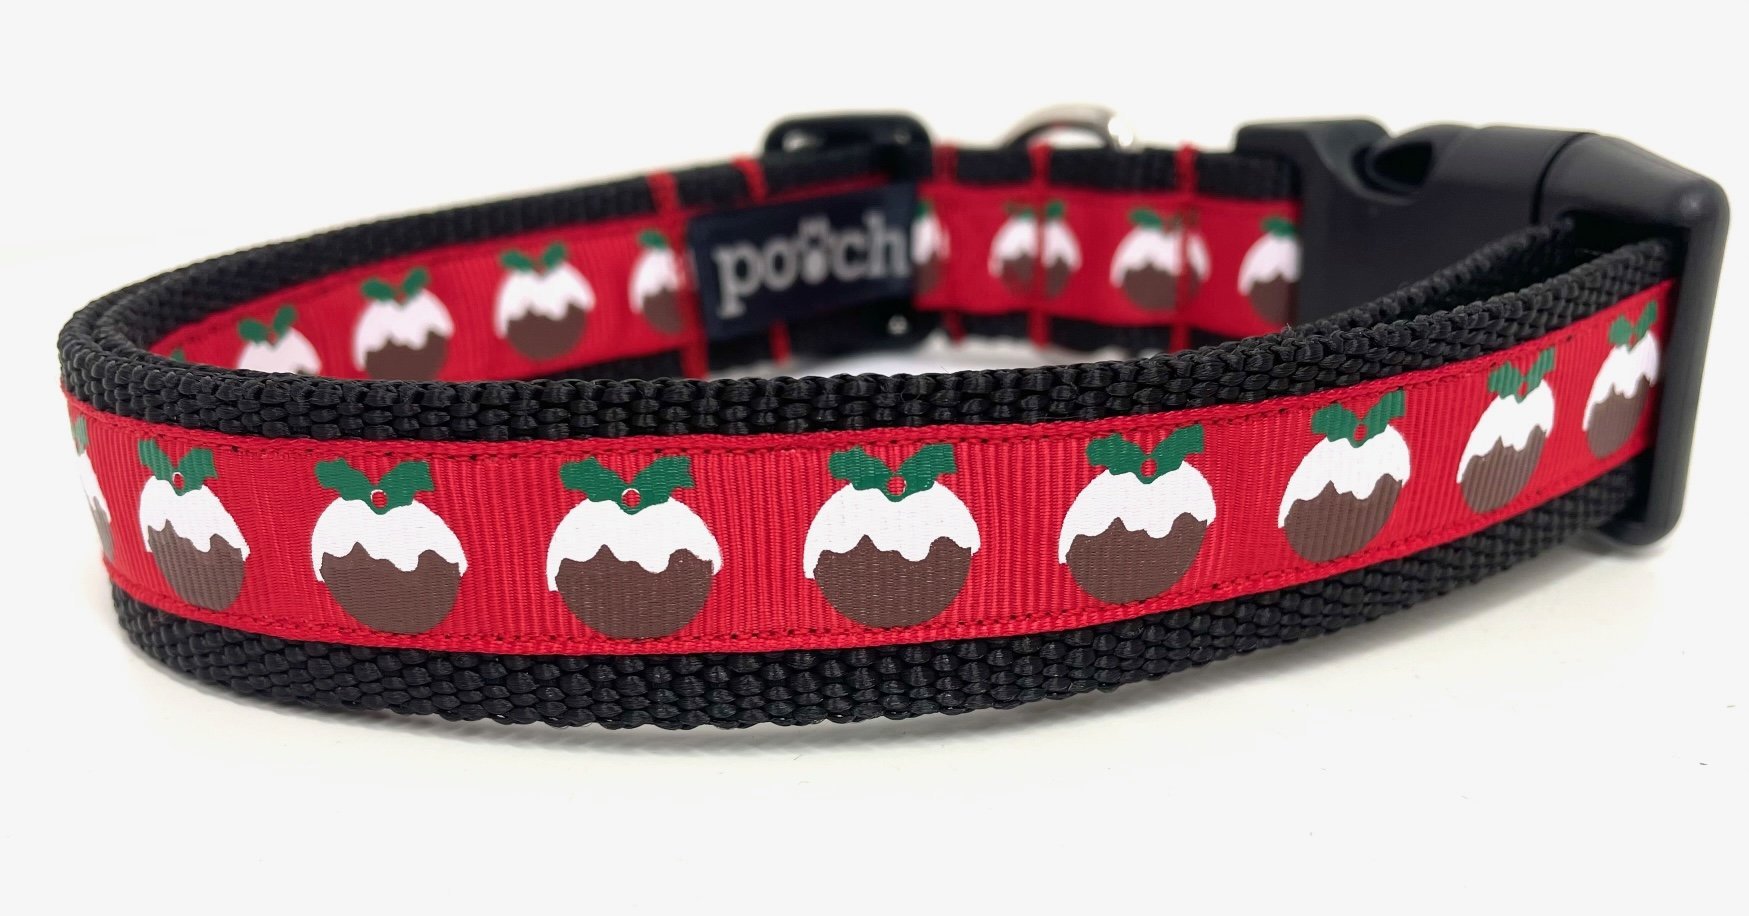 Christmas Pudding Dog Collar - Pooch-